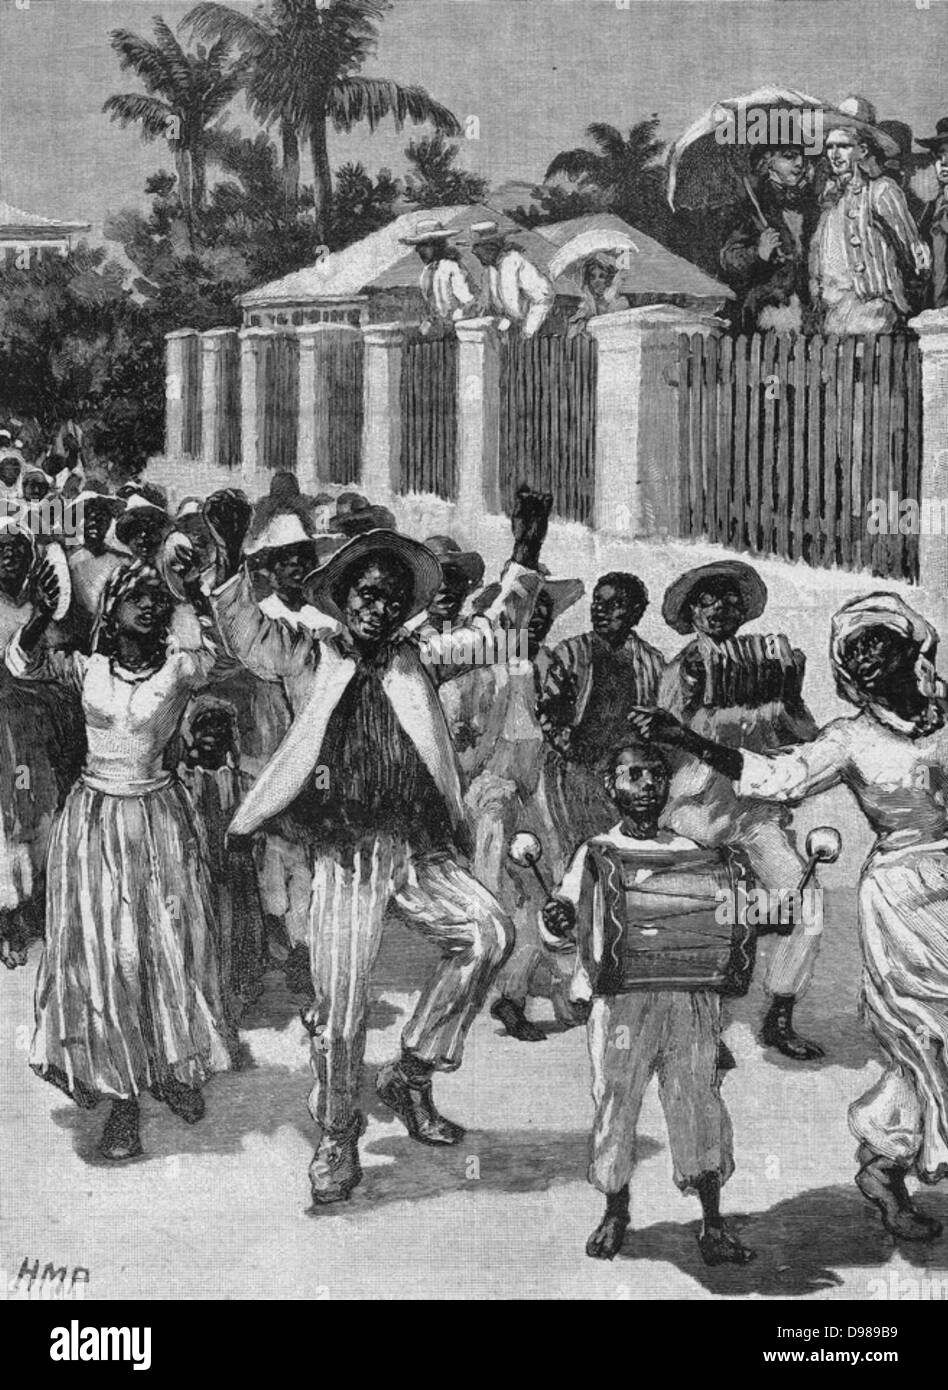 Abschaffung der Sklaverei im britischen Besitzungen am 1. August 1834. Emanzipation-Festival in Barbados feiert die Befreiung der Sklaven. Abbildung c1880. Stockfoto